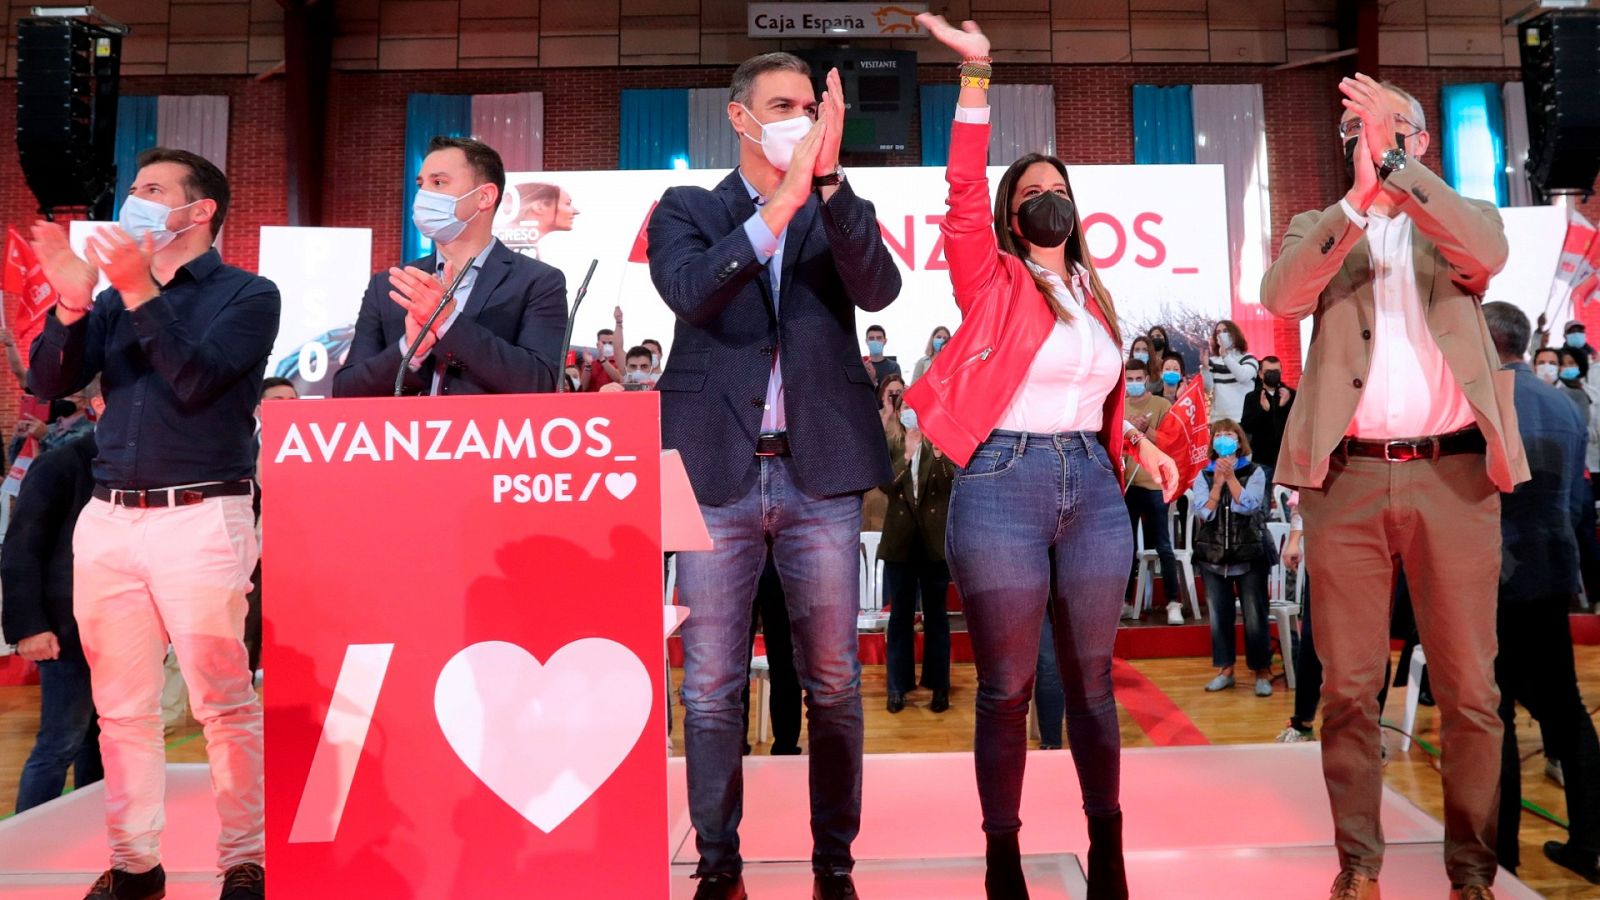 El secretario general del PSOE, Pedro Sánchez, junto a otros dirigentes socialistas durante su intervención en Ponferrada.